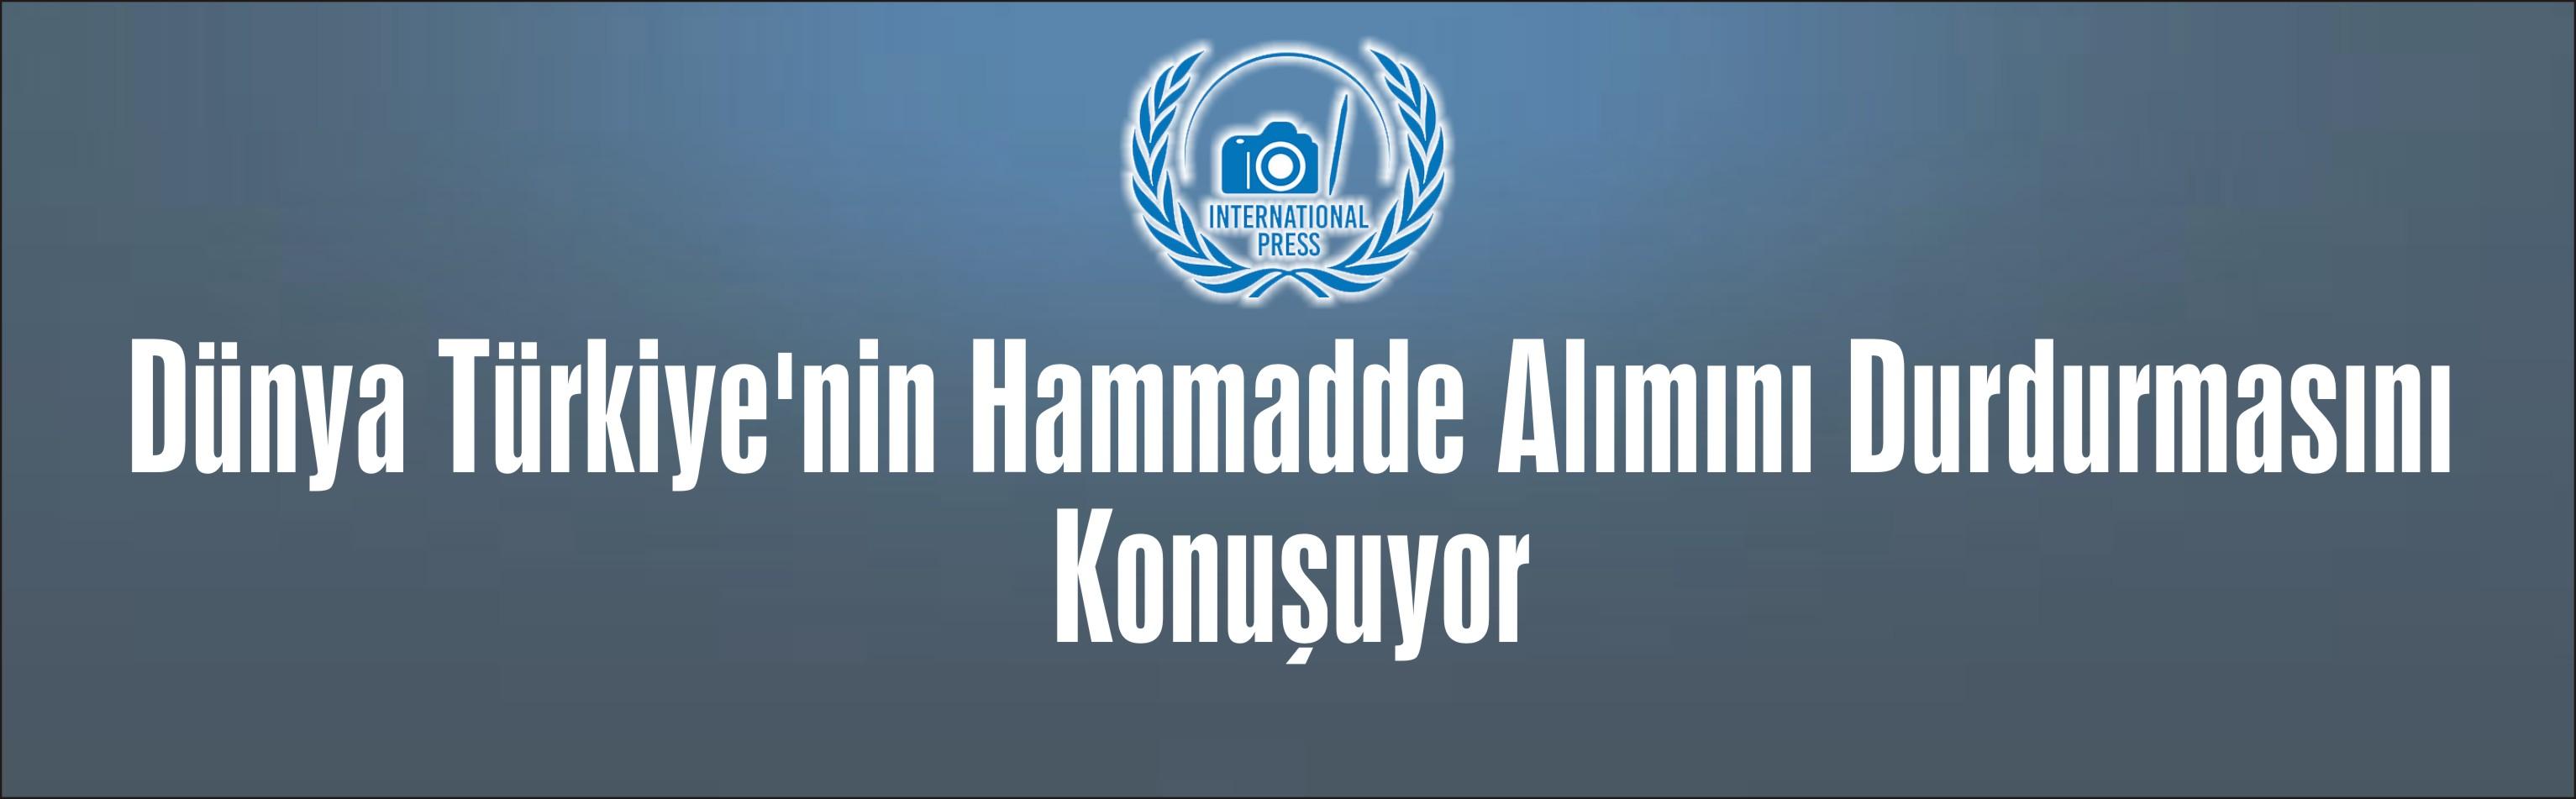 Dünya Türkiye'nin Hammadde Alımını Durdurmasını Konuşuyor